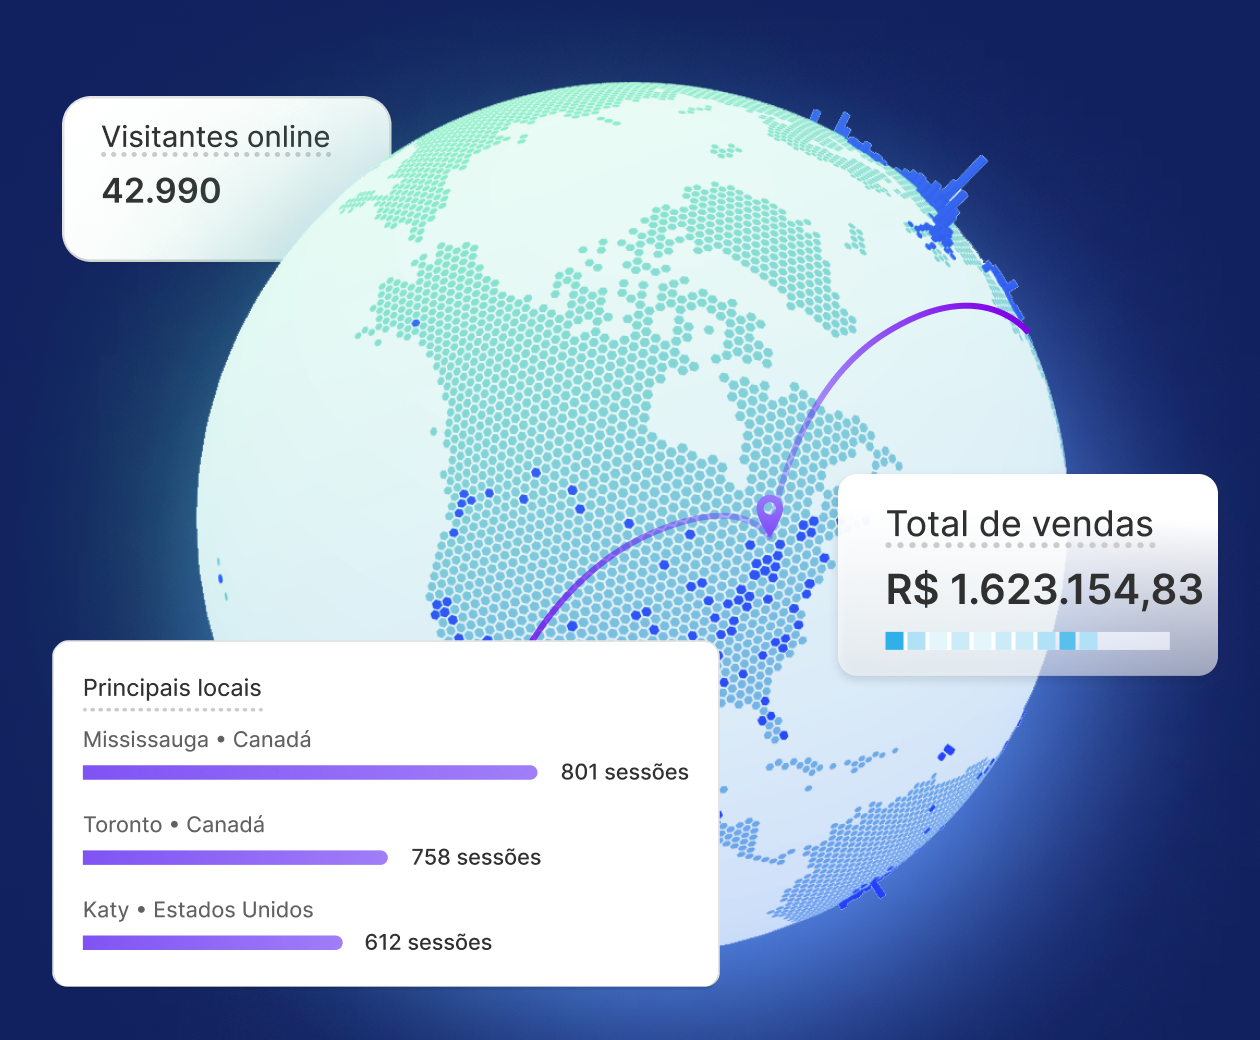 Uma montagem de imagens da tela Live View mostrando o globo e os módulos dos principais locais, do total de vendas e dos visitantes no momento.